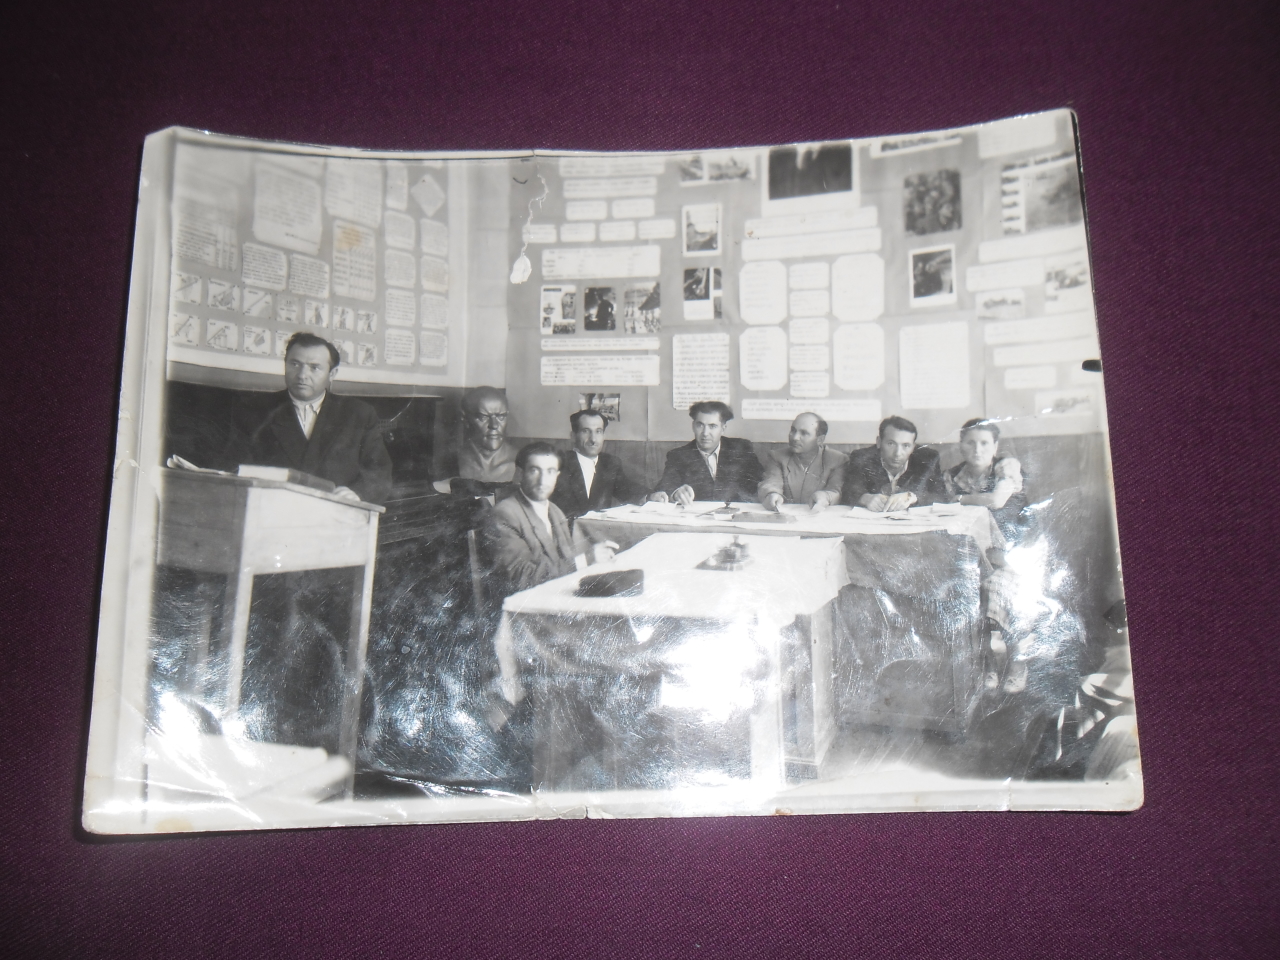 Սաղաթել Մանուկի Մնեյանը (Վաստակավոր մանկավարժ, Հայրենական պատերազմի մասնակից) ելույթի պահին